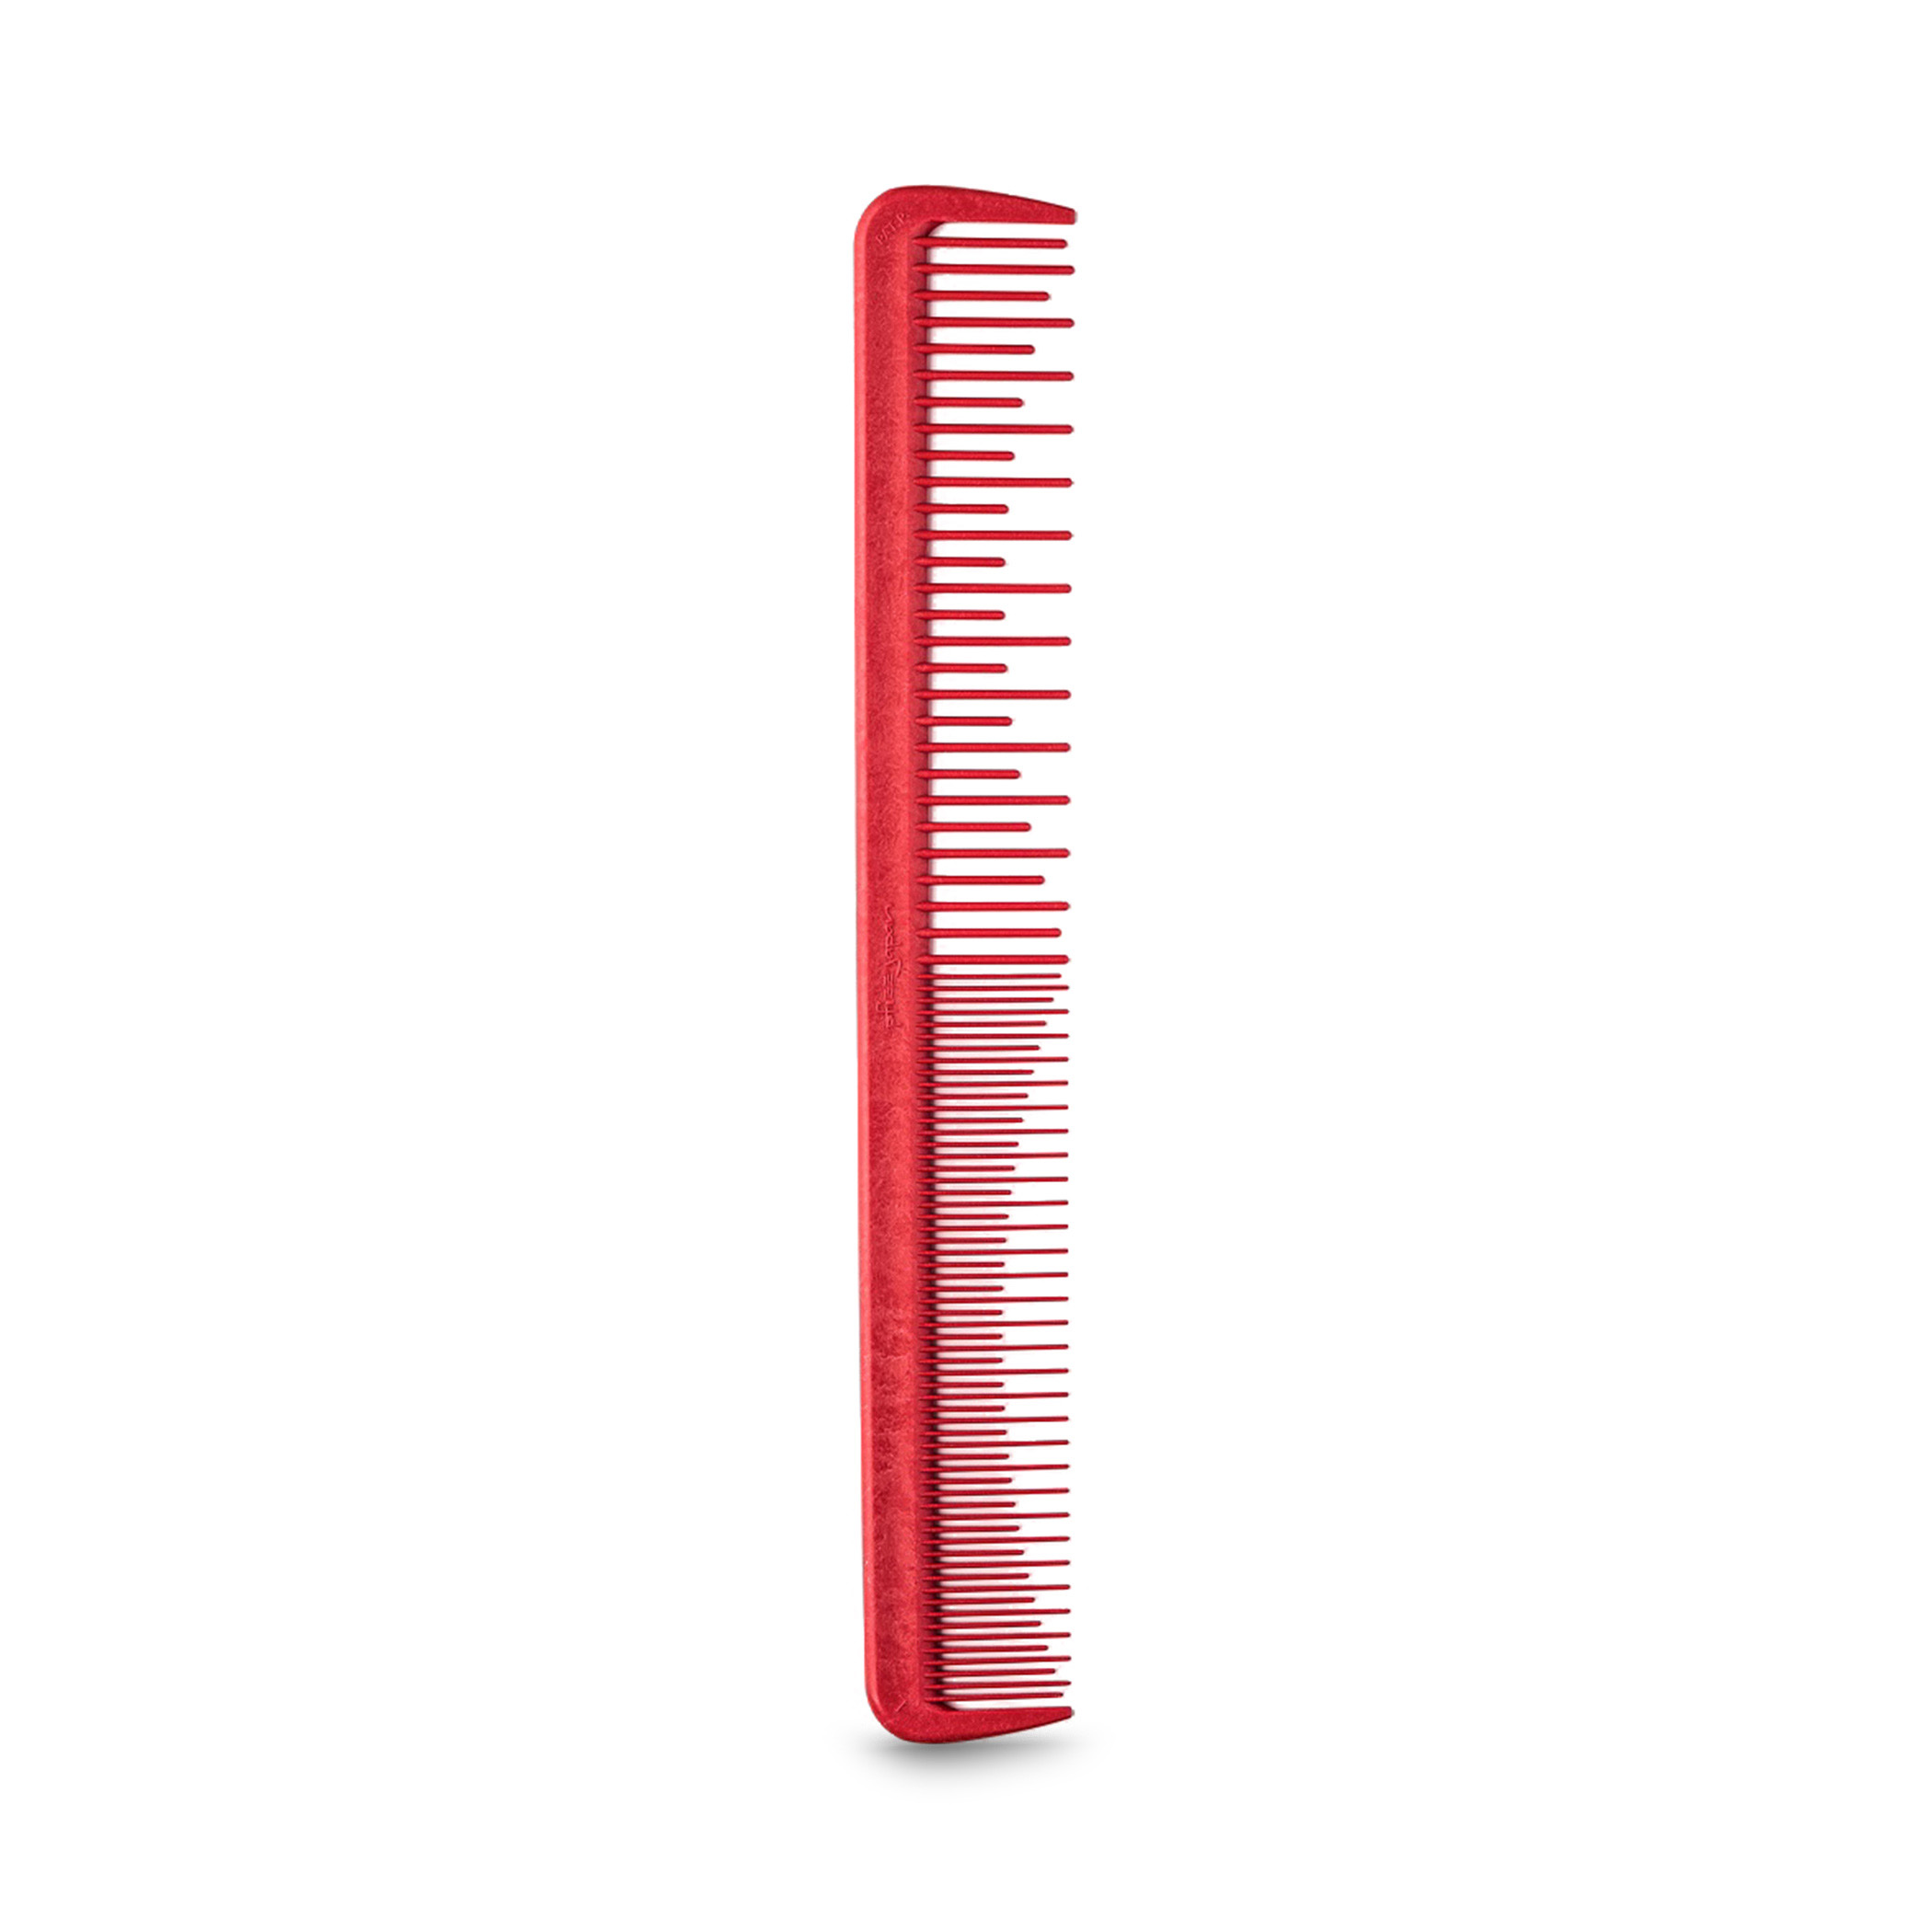 Гребень длинный. Pfizz расческа. Расческа Pfizz Comb Red long. Расческа с длинной толстой ручкой отзывы.